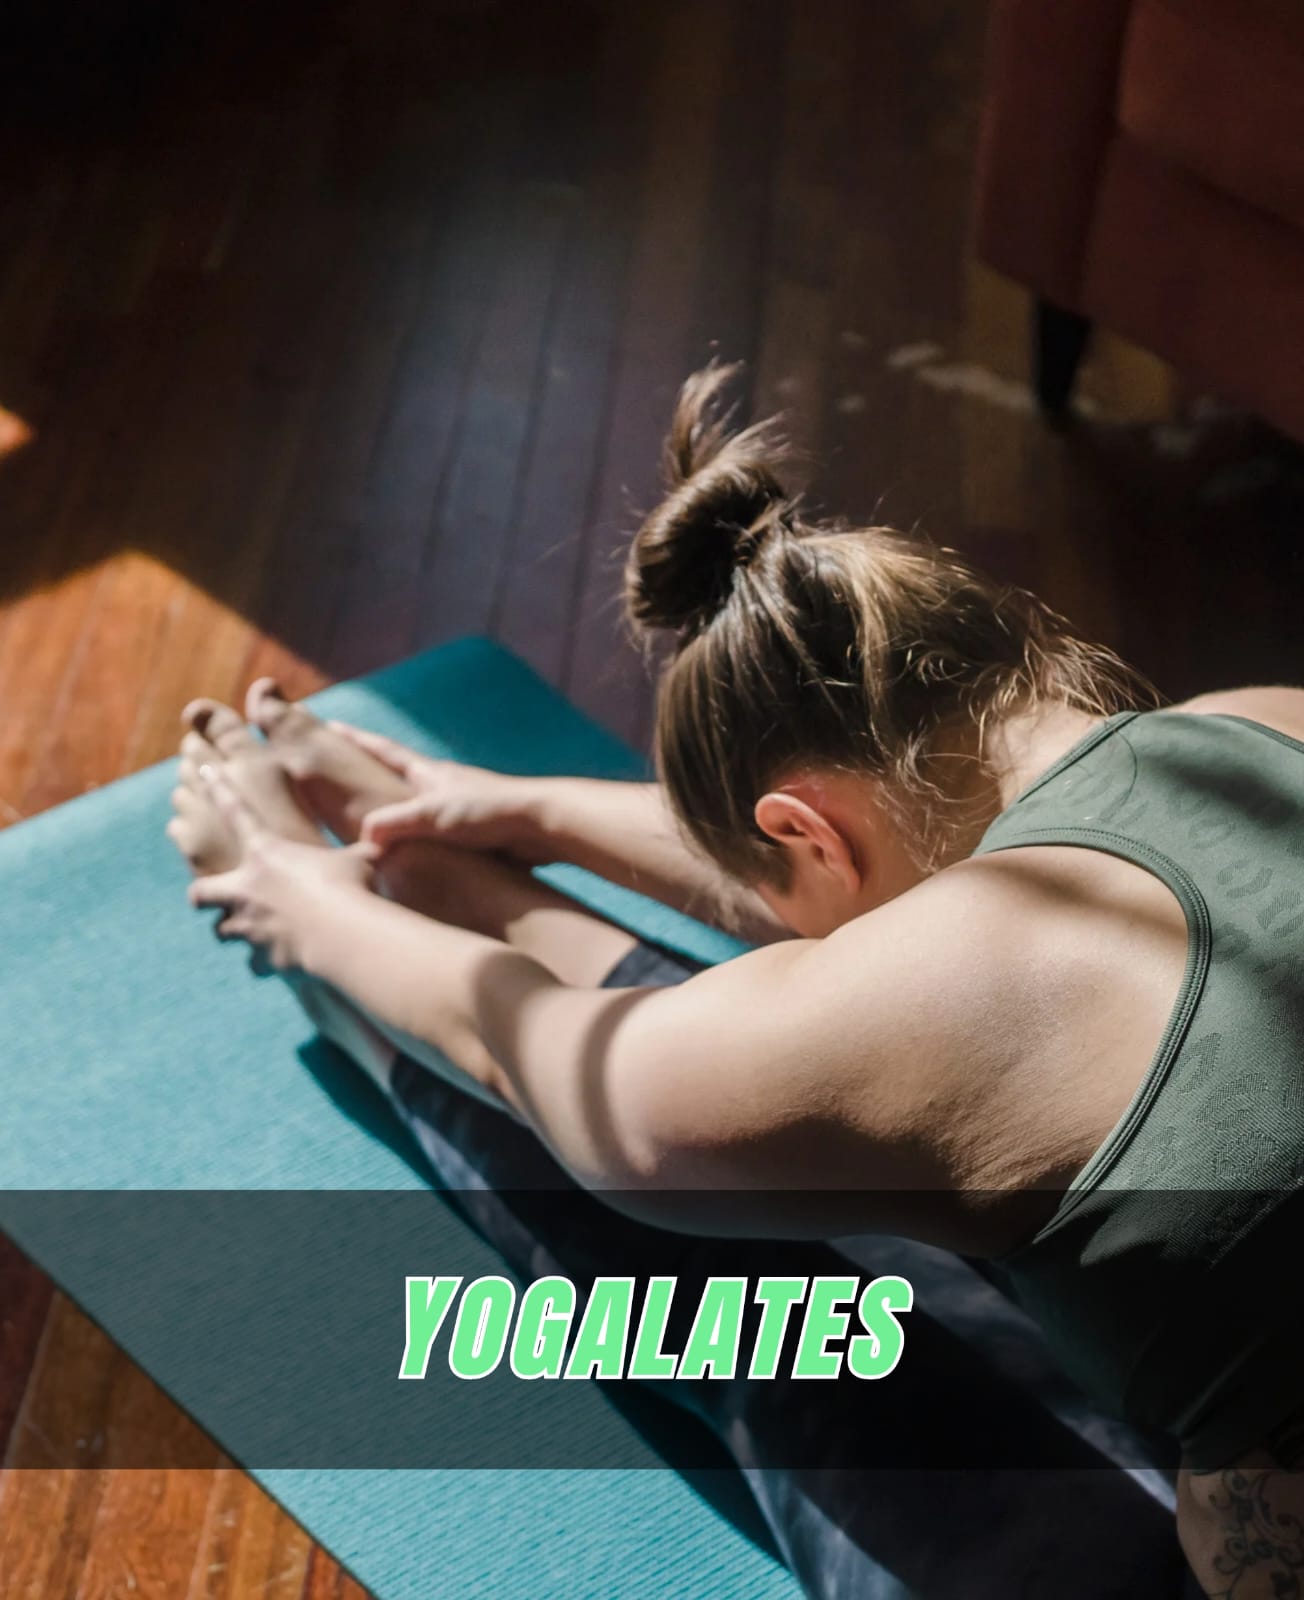 Yogafoto mit der Aufschrift "Yogalates"